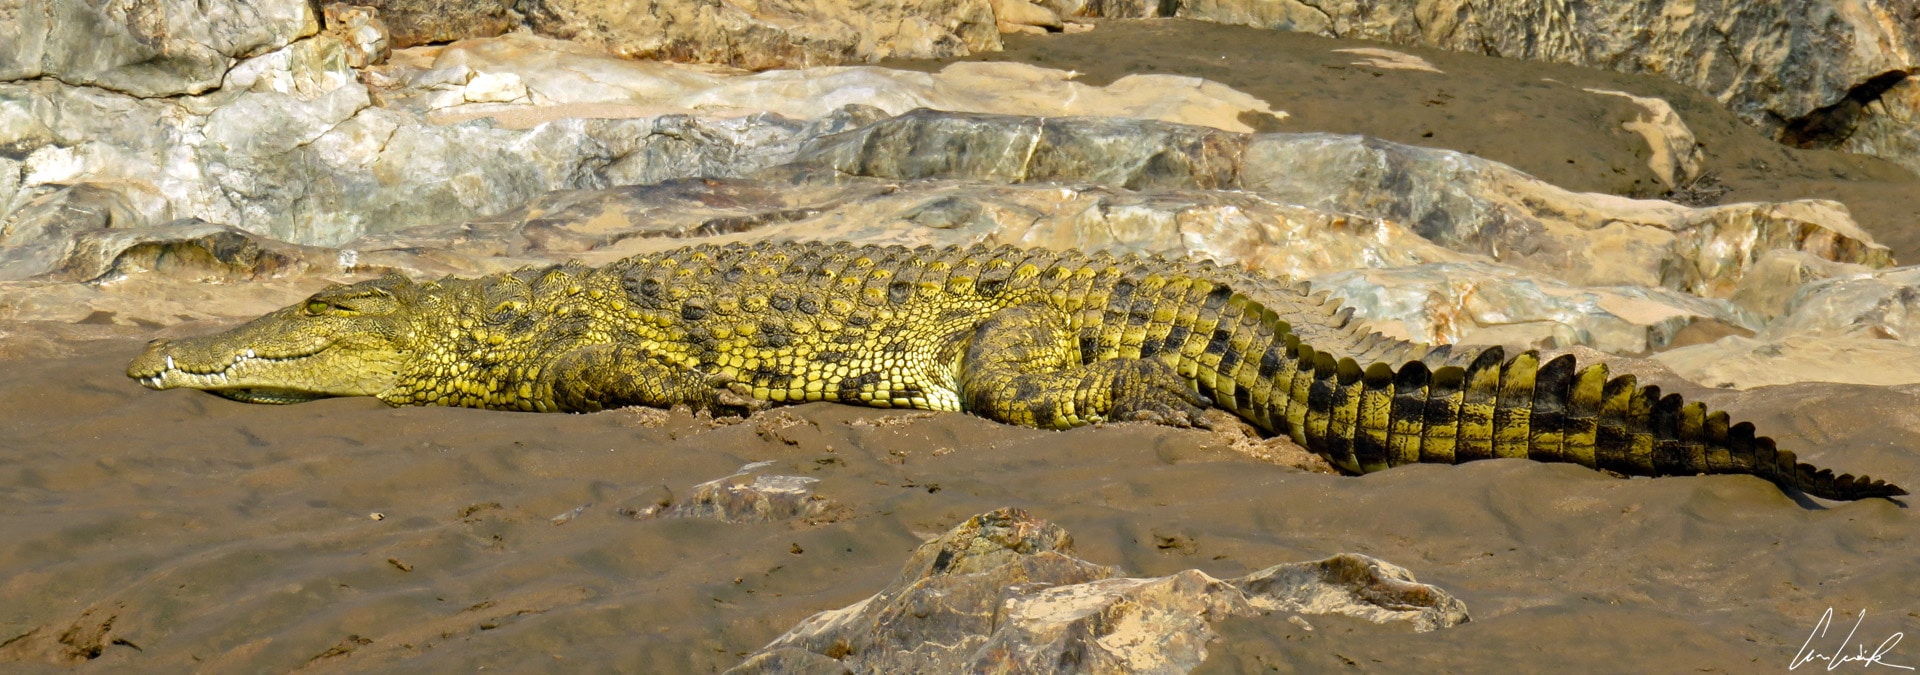 Sur un rocher noir, un petit crocodile veille. Les vaguelettes qui agitent la surface de l’eau troublent très légèrement son reflet.